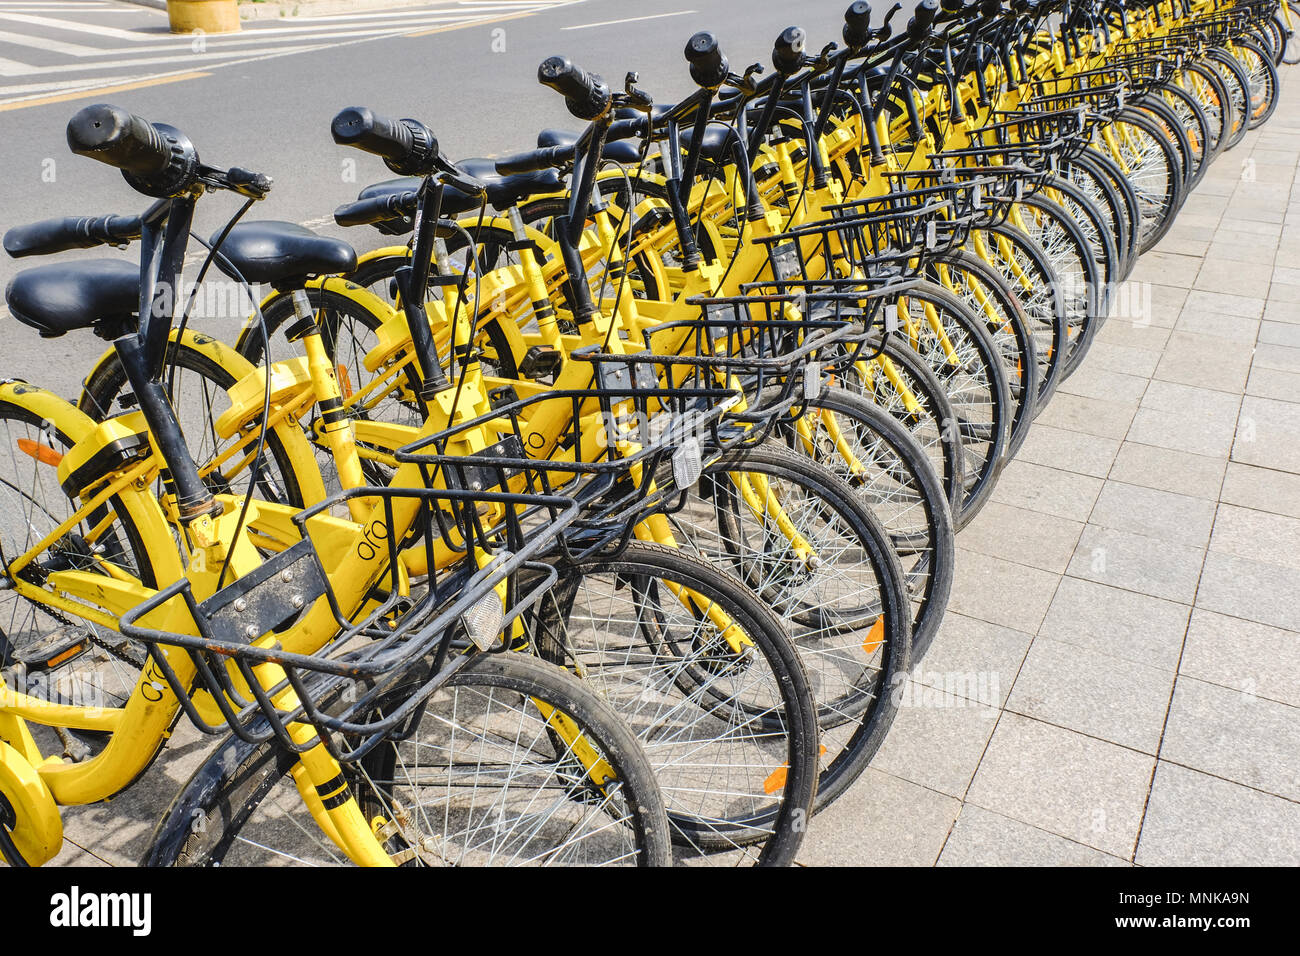 Peking, China 30. APRIL 2018: die Reihe der gelben Fahrräder, OFO frei schwebenden Fahrradverleih in China. Stockfoto